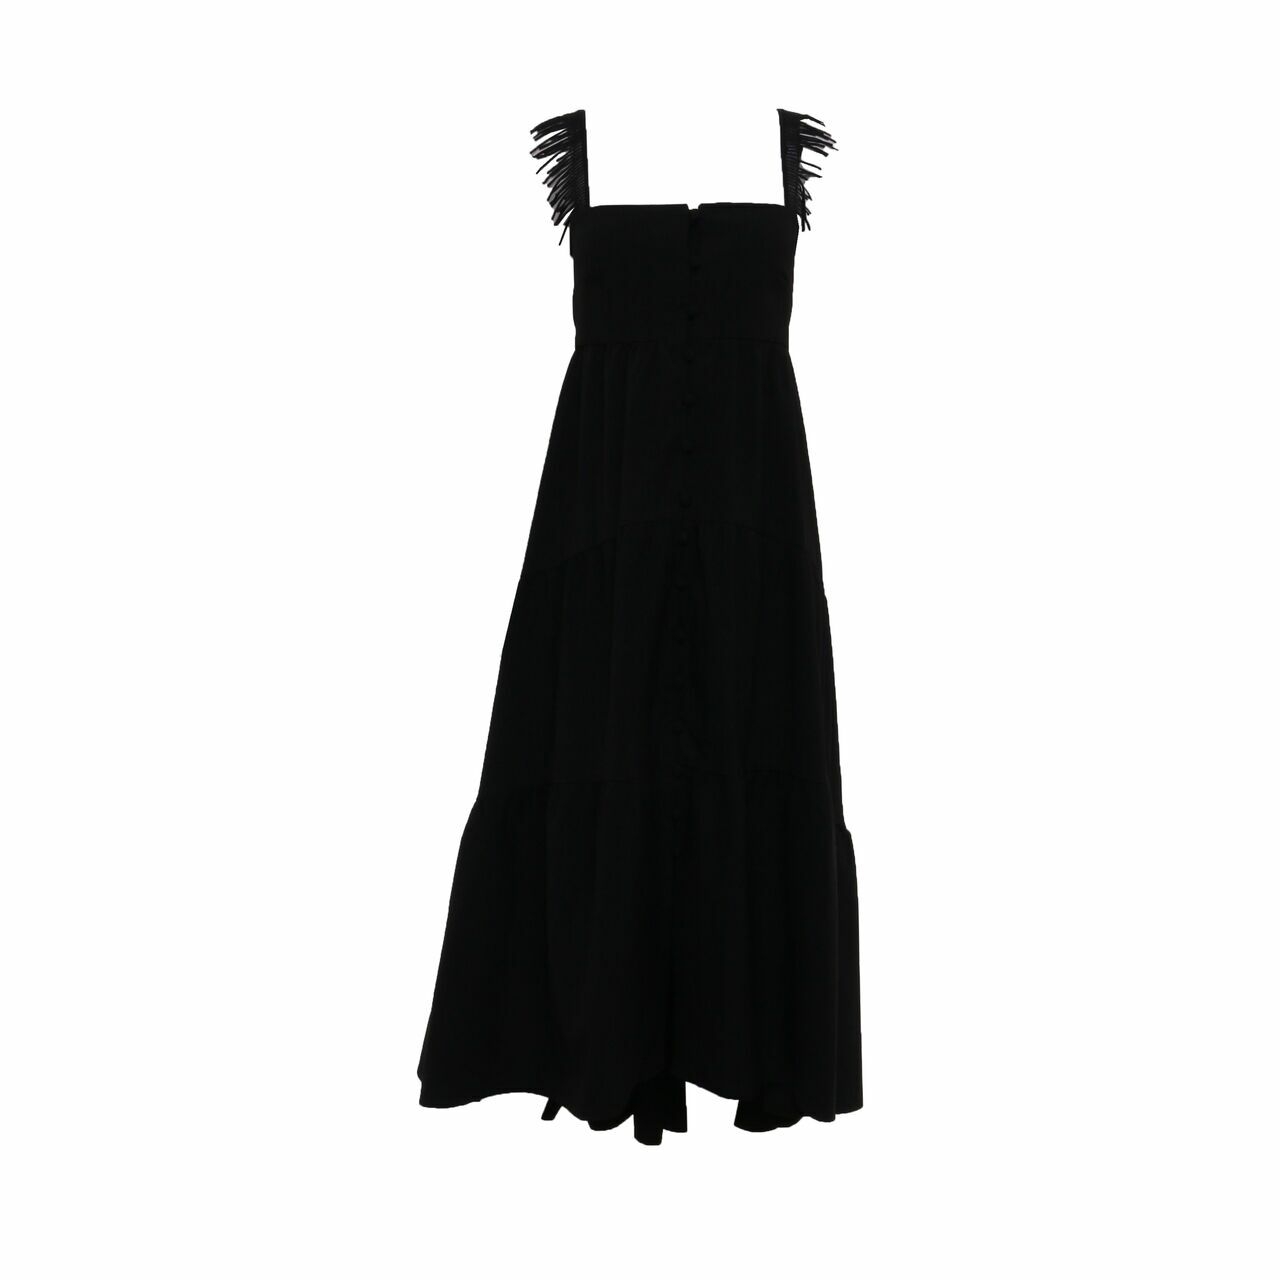 Natalia/Kiantoro Black Long Dress